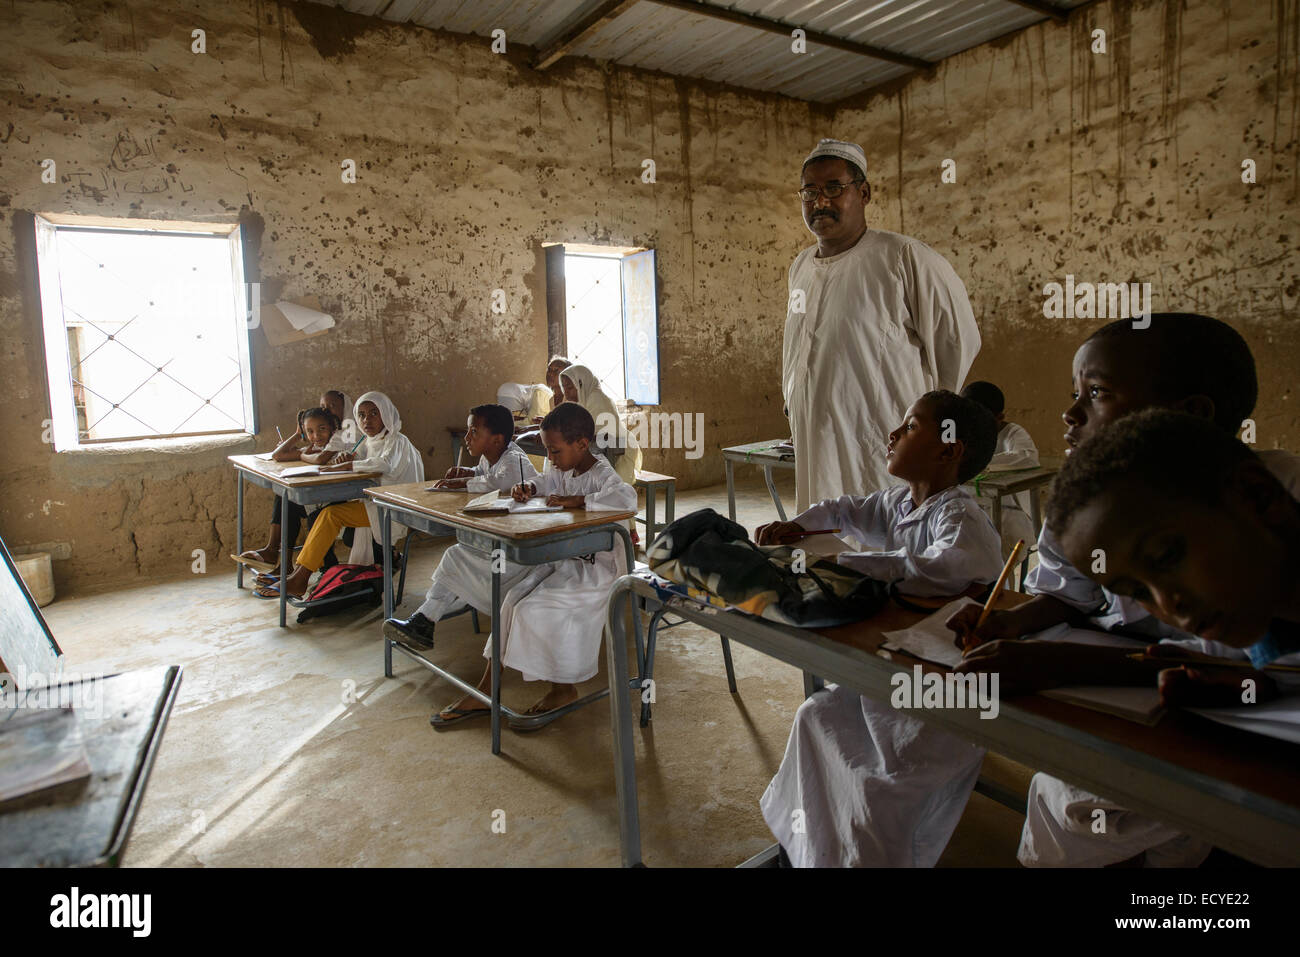 Children of a school in the Sahara desert, Sudan Stock Photo